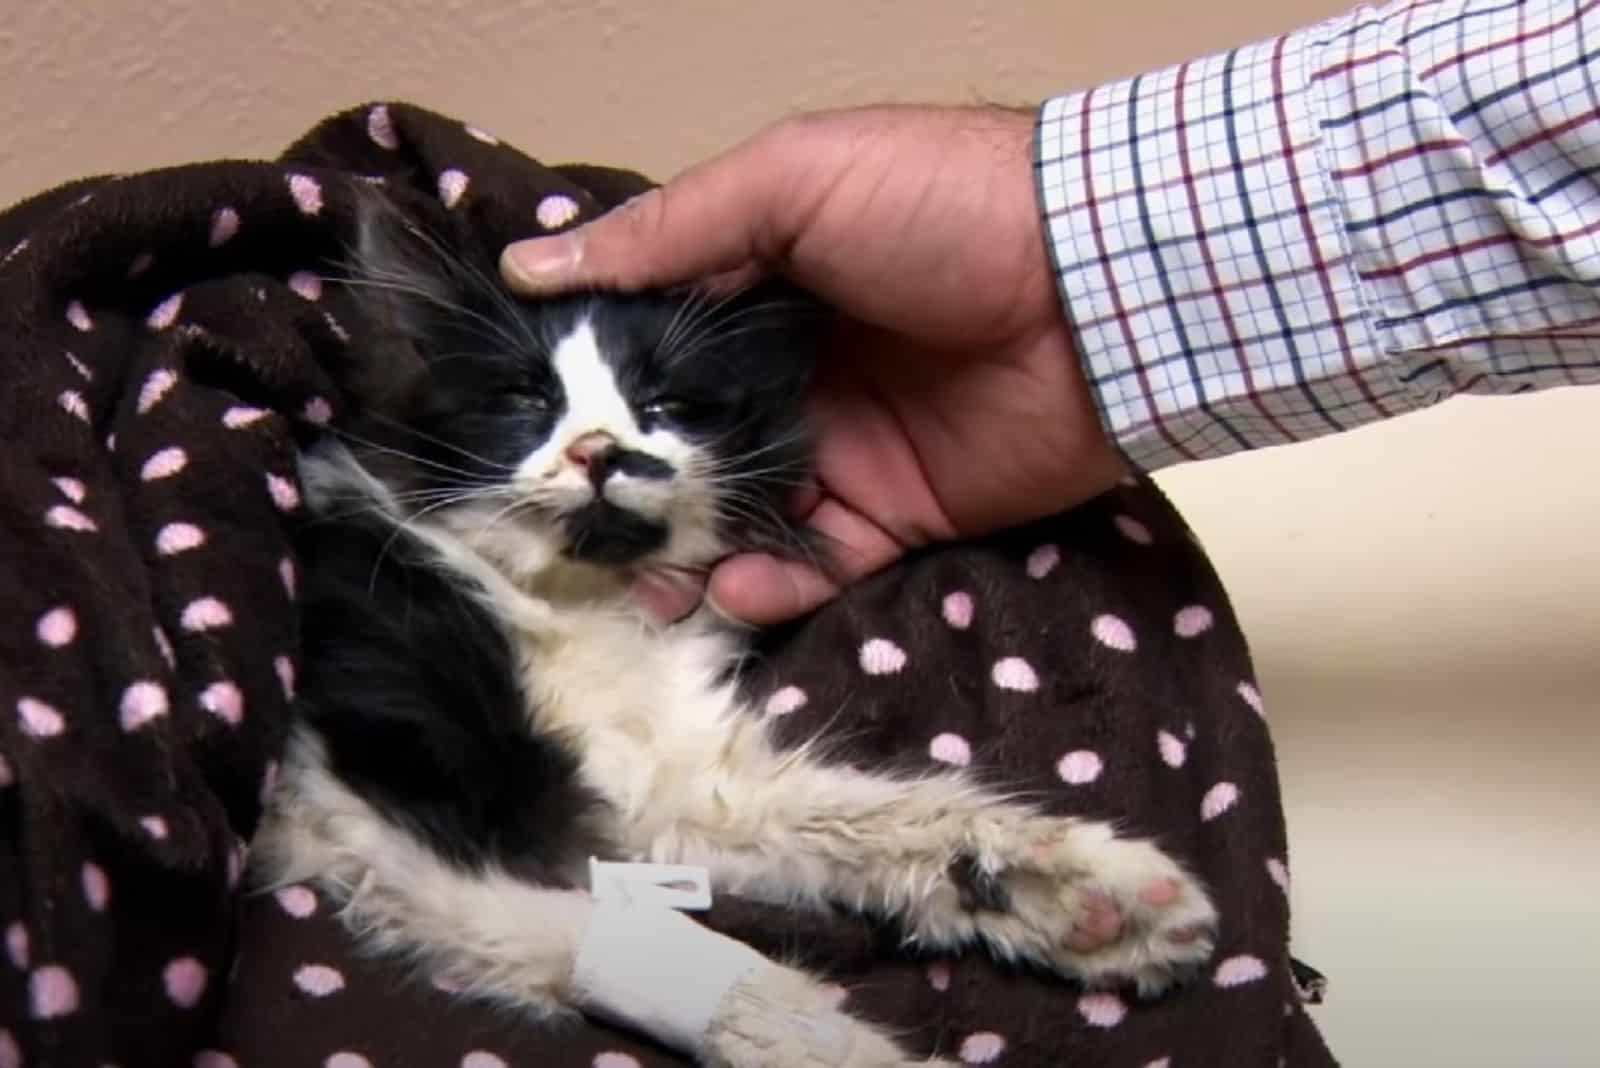 a man caresses an injured kitten